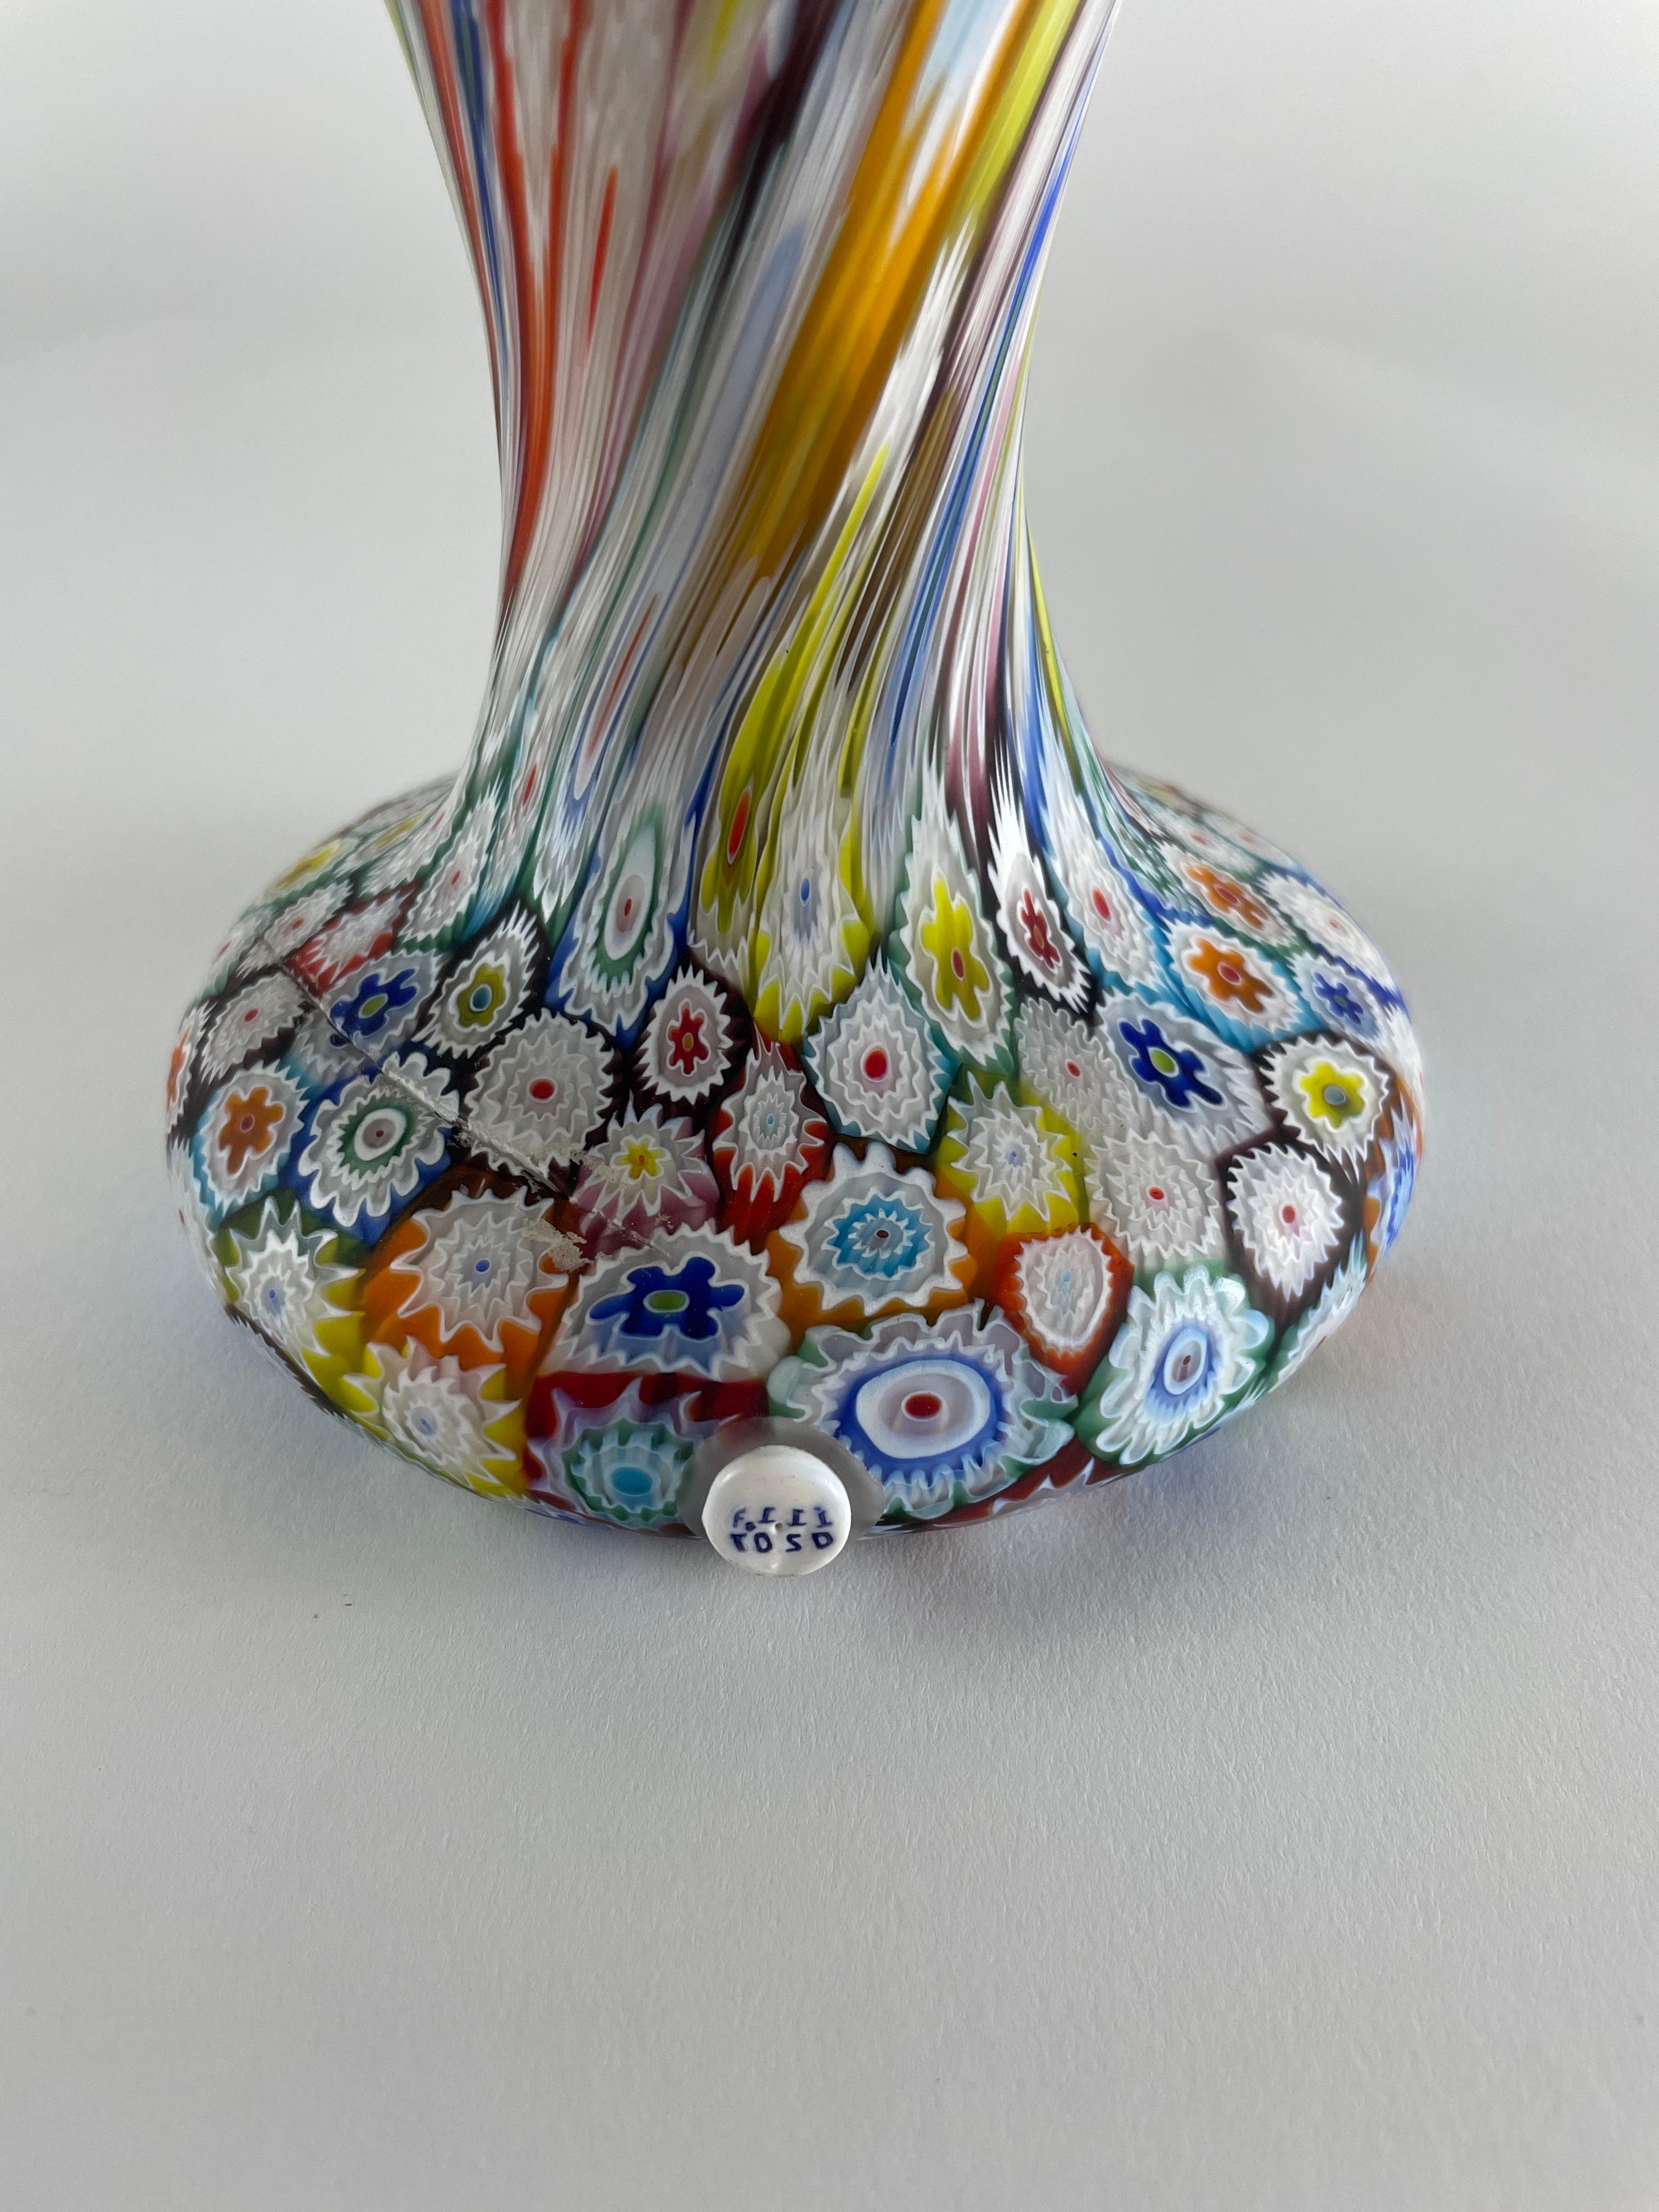 Vase réalisé par la verrerie Fratelli Toso, Murano, dans les années 1950. Fratelli Toso s'est toujours spécialisé dans le travail de la murrine, véritable fer de lance de l'entreprise. Le vase est fabriqué à partir de la murrina millefiori classique